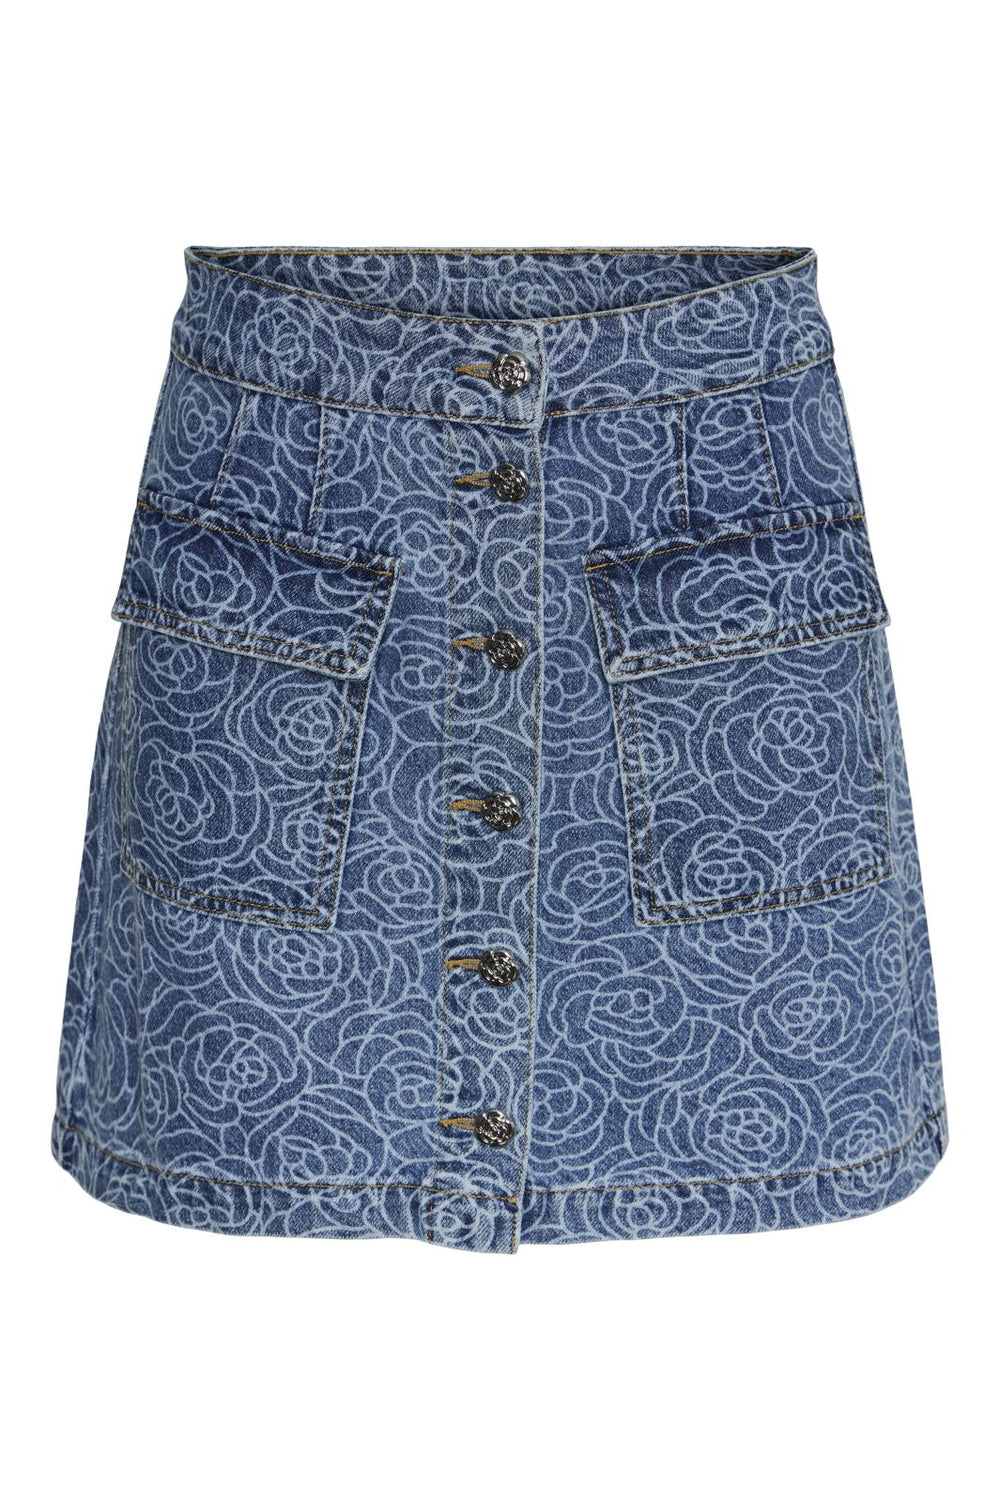 Y.A.S - Yasrosalyn Mini Skirt - 4458881 Medium Blue Denim Rosalyn